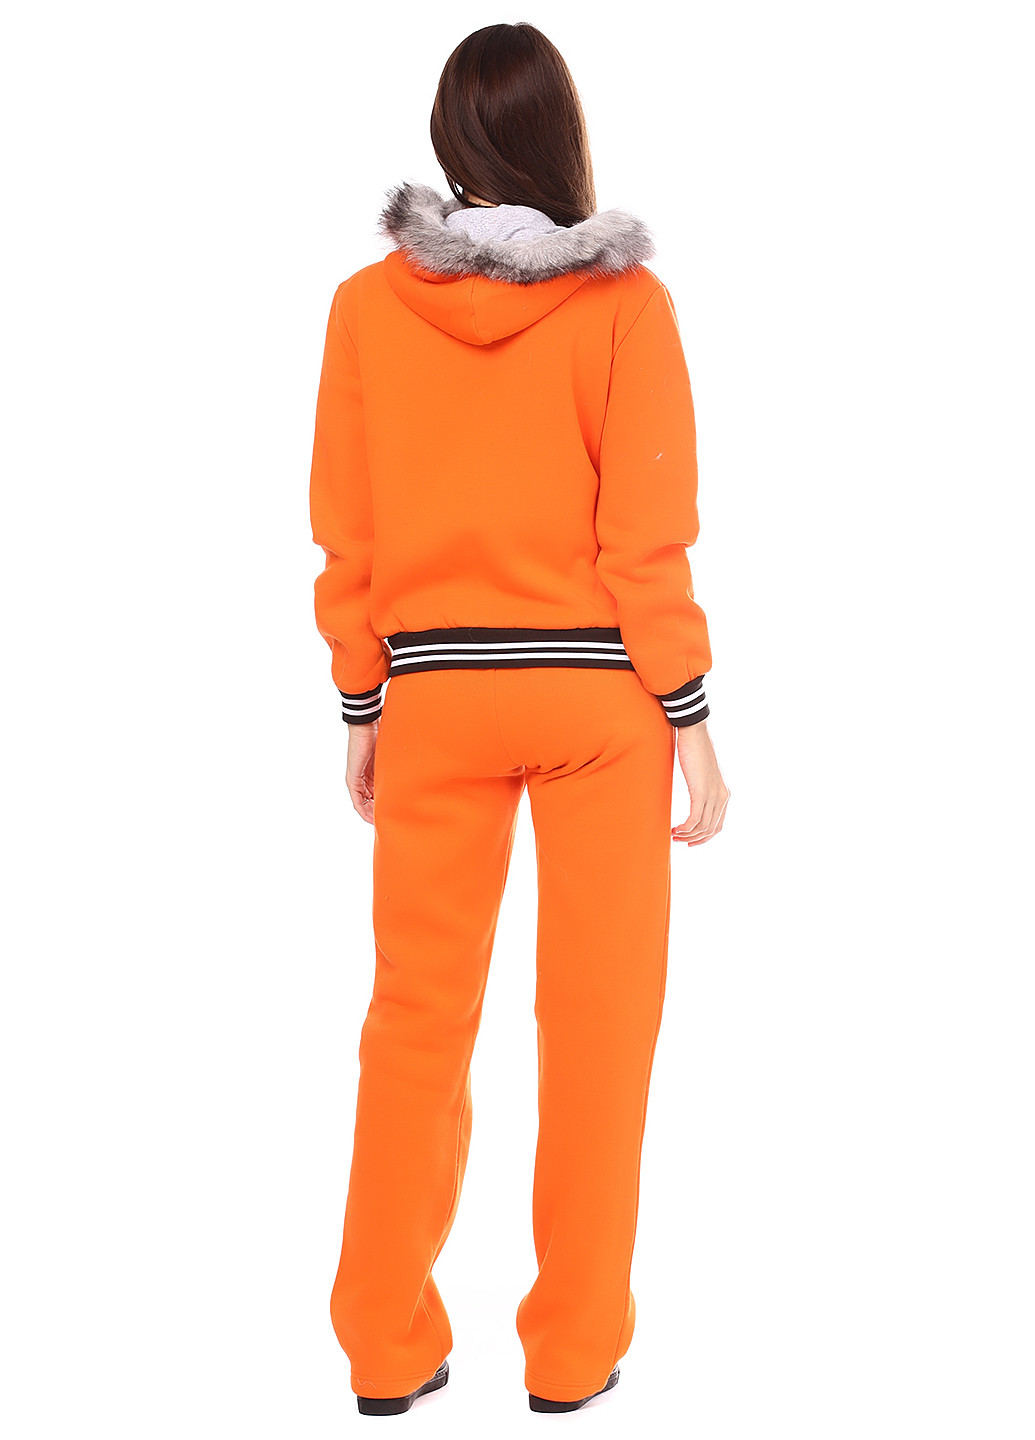 Костюм (кофта, брюки) Ut брючный оранжевый спортивный